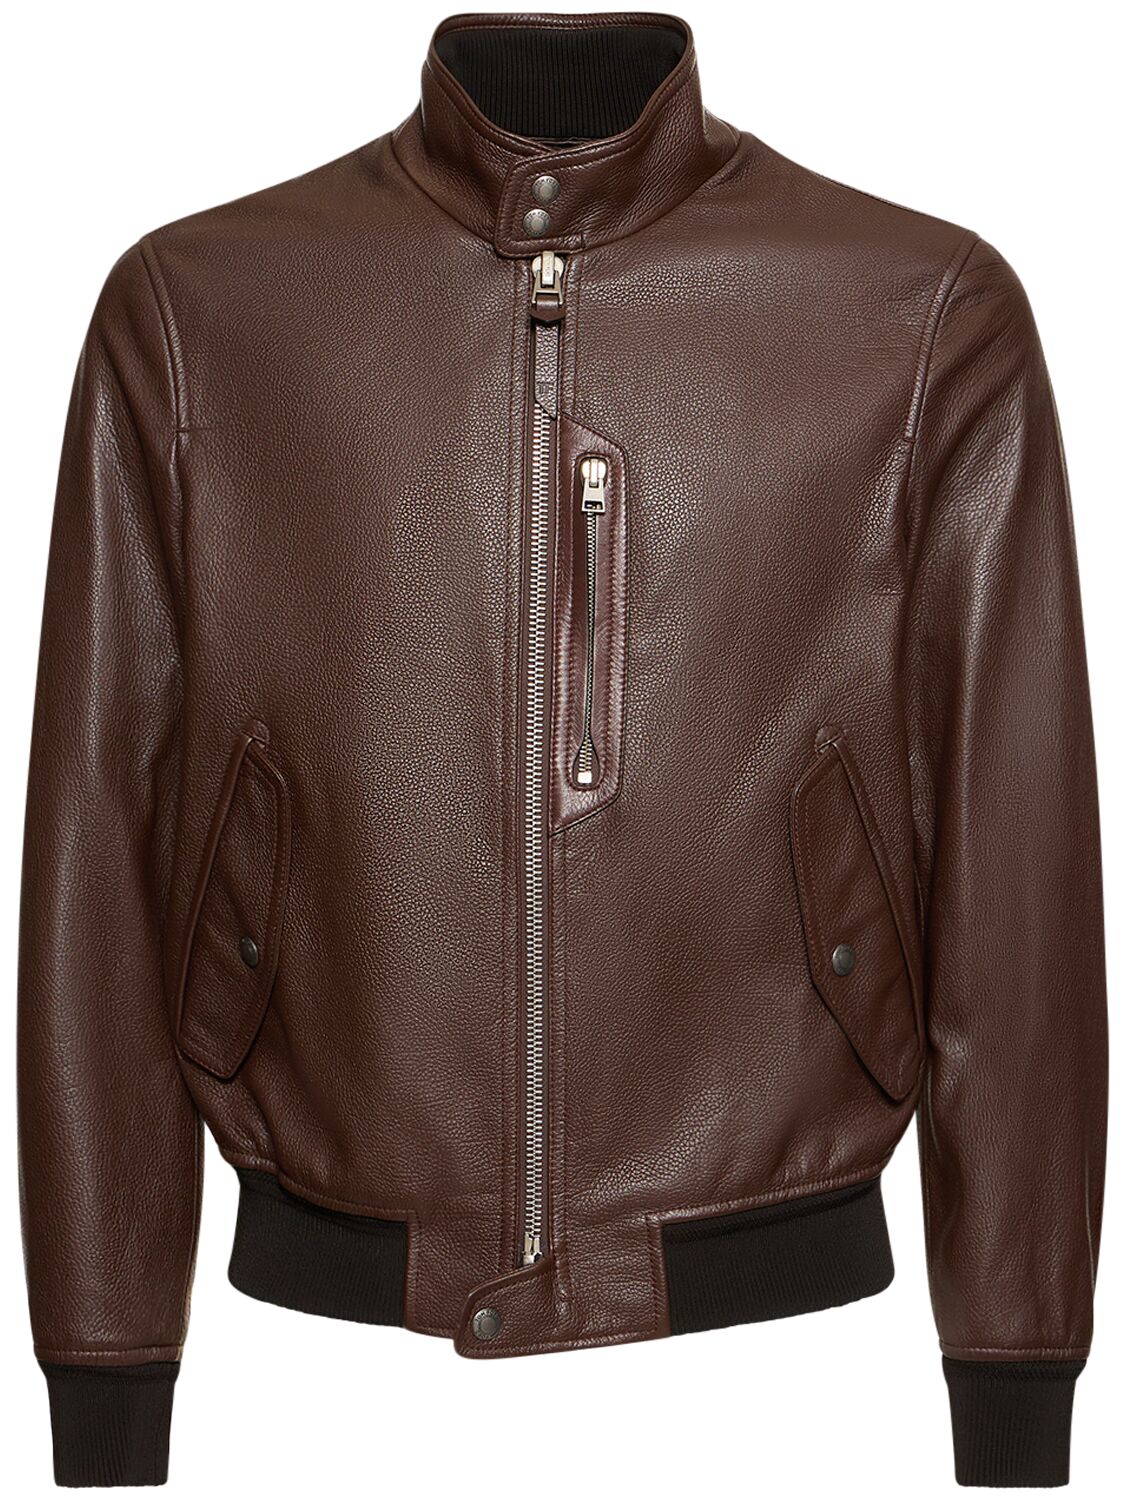 Harrington Tumbled Grain Leather Jacket – MEN > CLOTHING > JACKETS